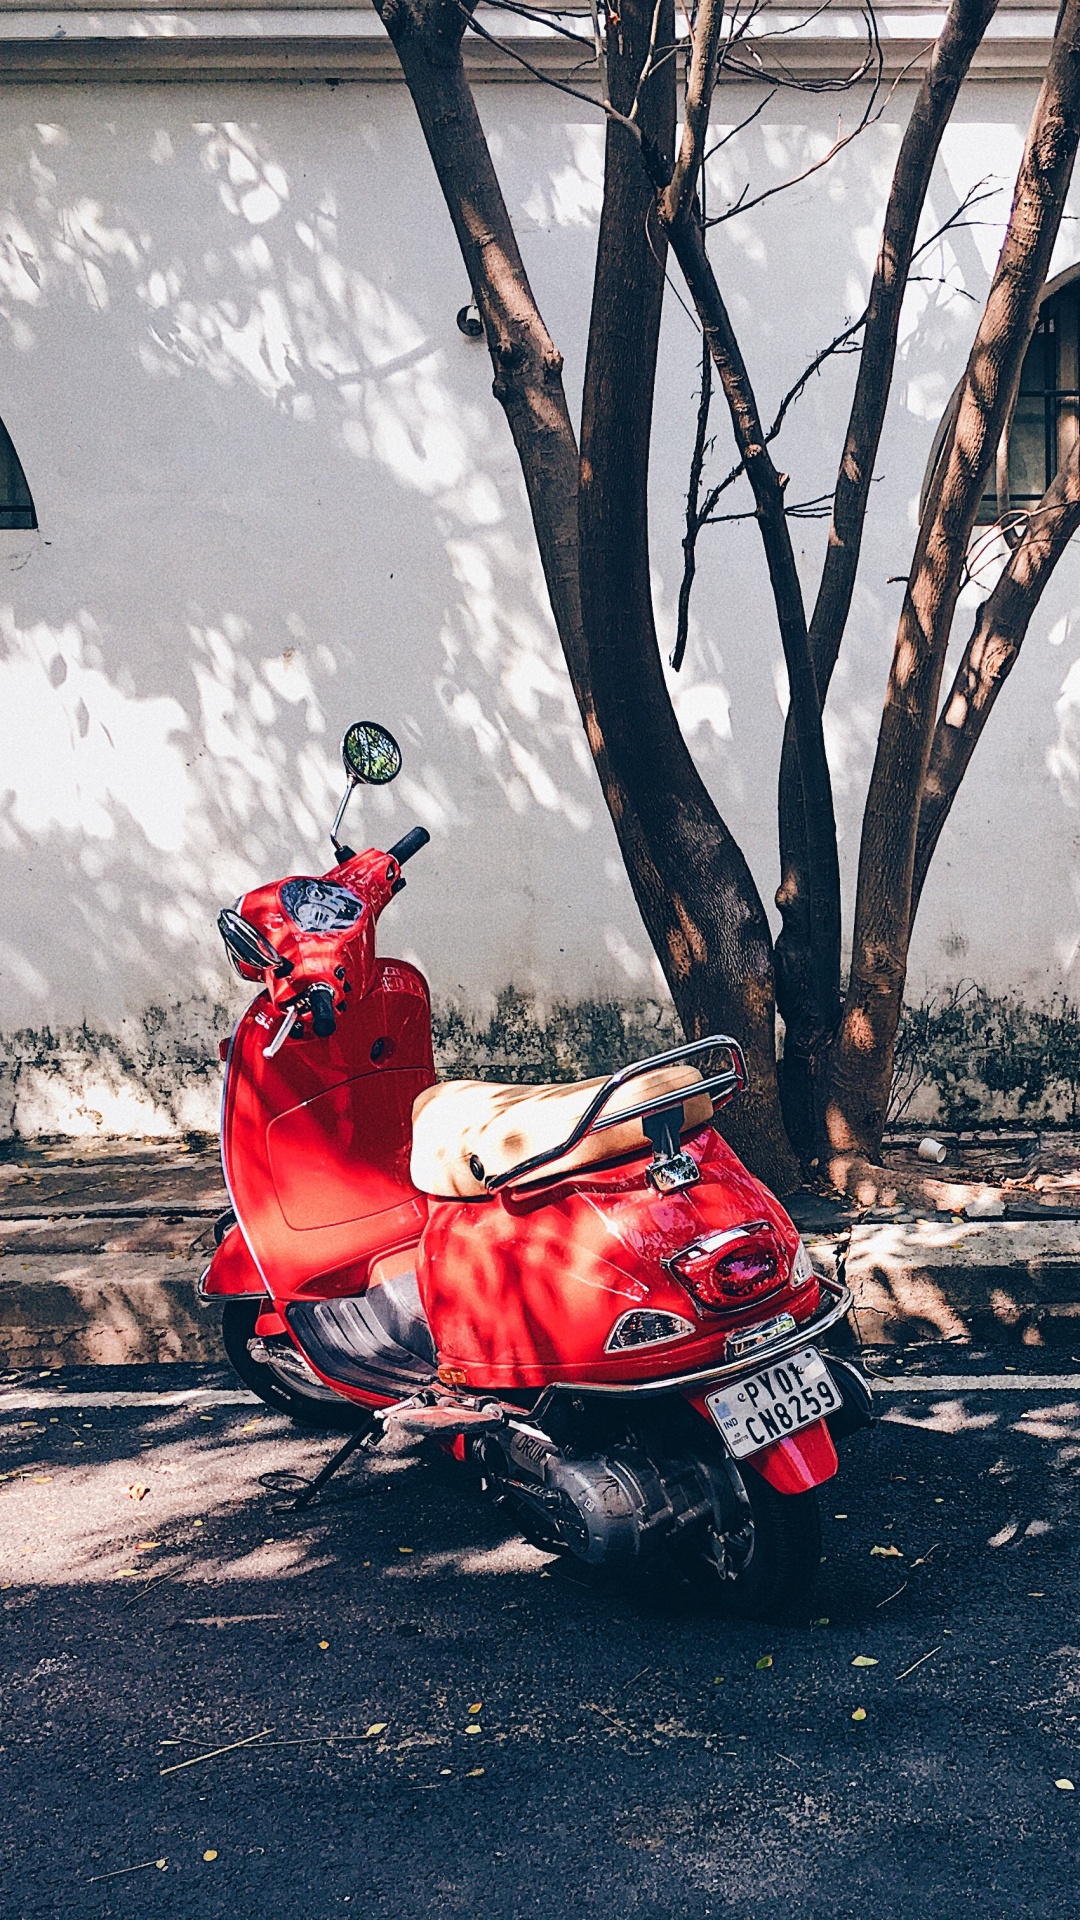 Hombre de Chaqueta Roja Montando Moto Roja en la Carretera Durante el Día. Wallpaper in 1080x1920 Resolution